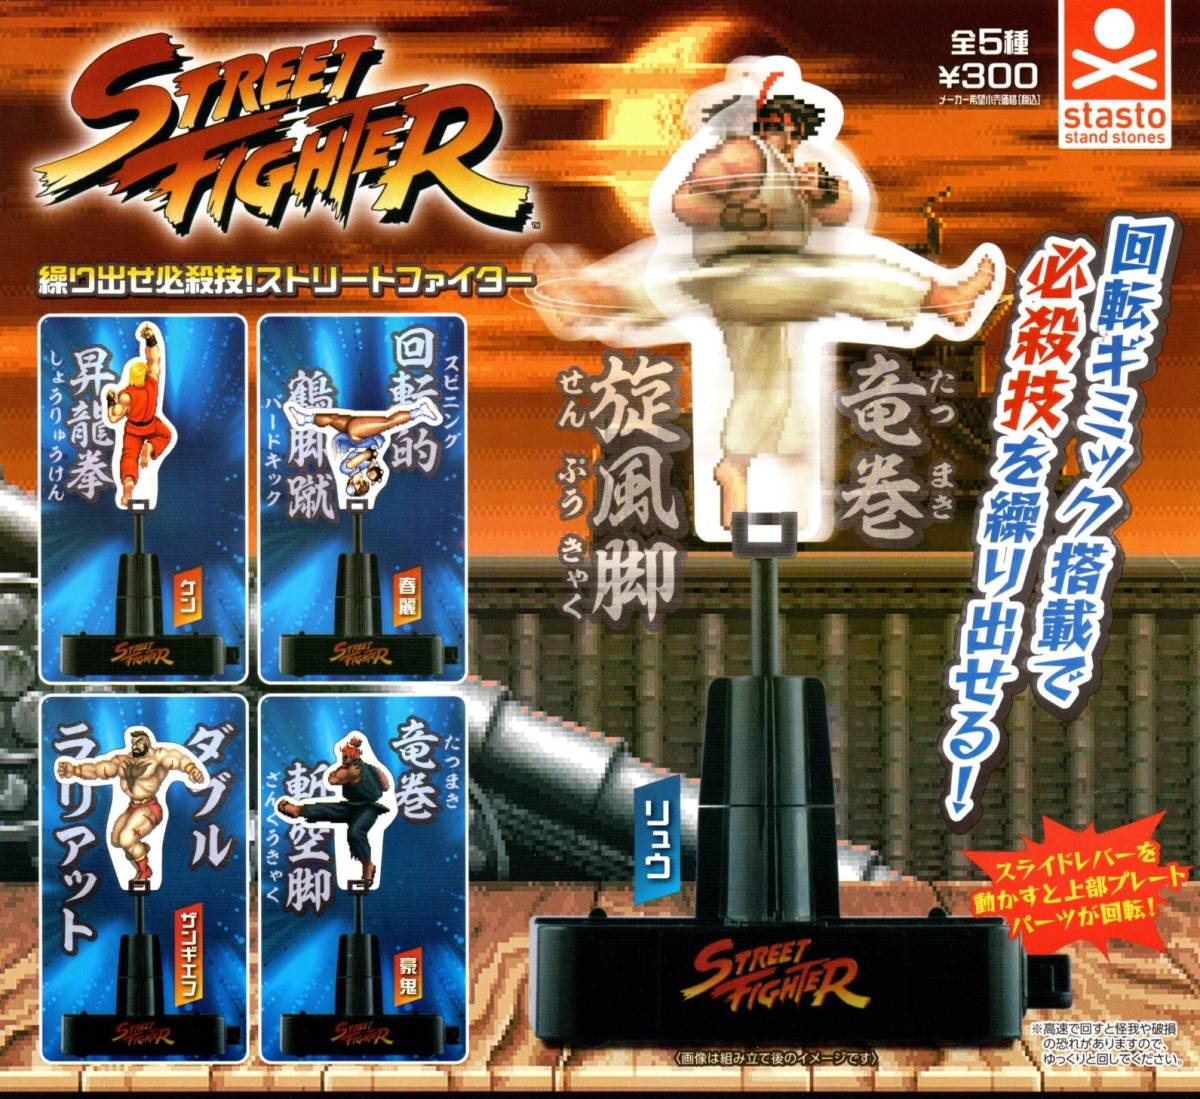 *** быстрое решение!.... обязательно ..! Street Fighter все 5 вид стоимость доставки 300 иен ~[ общая сумма 1198 иен ~]ryuu/ талон / весна красота / The ngief/../ga коричневый *****